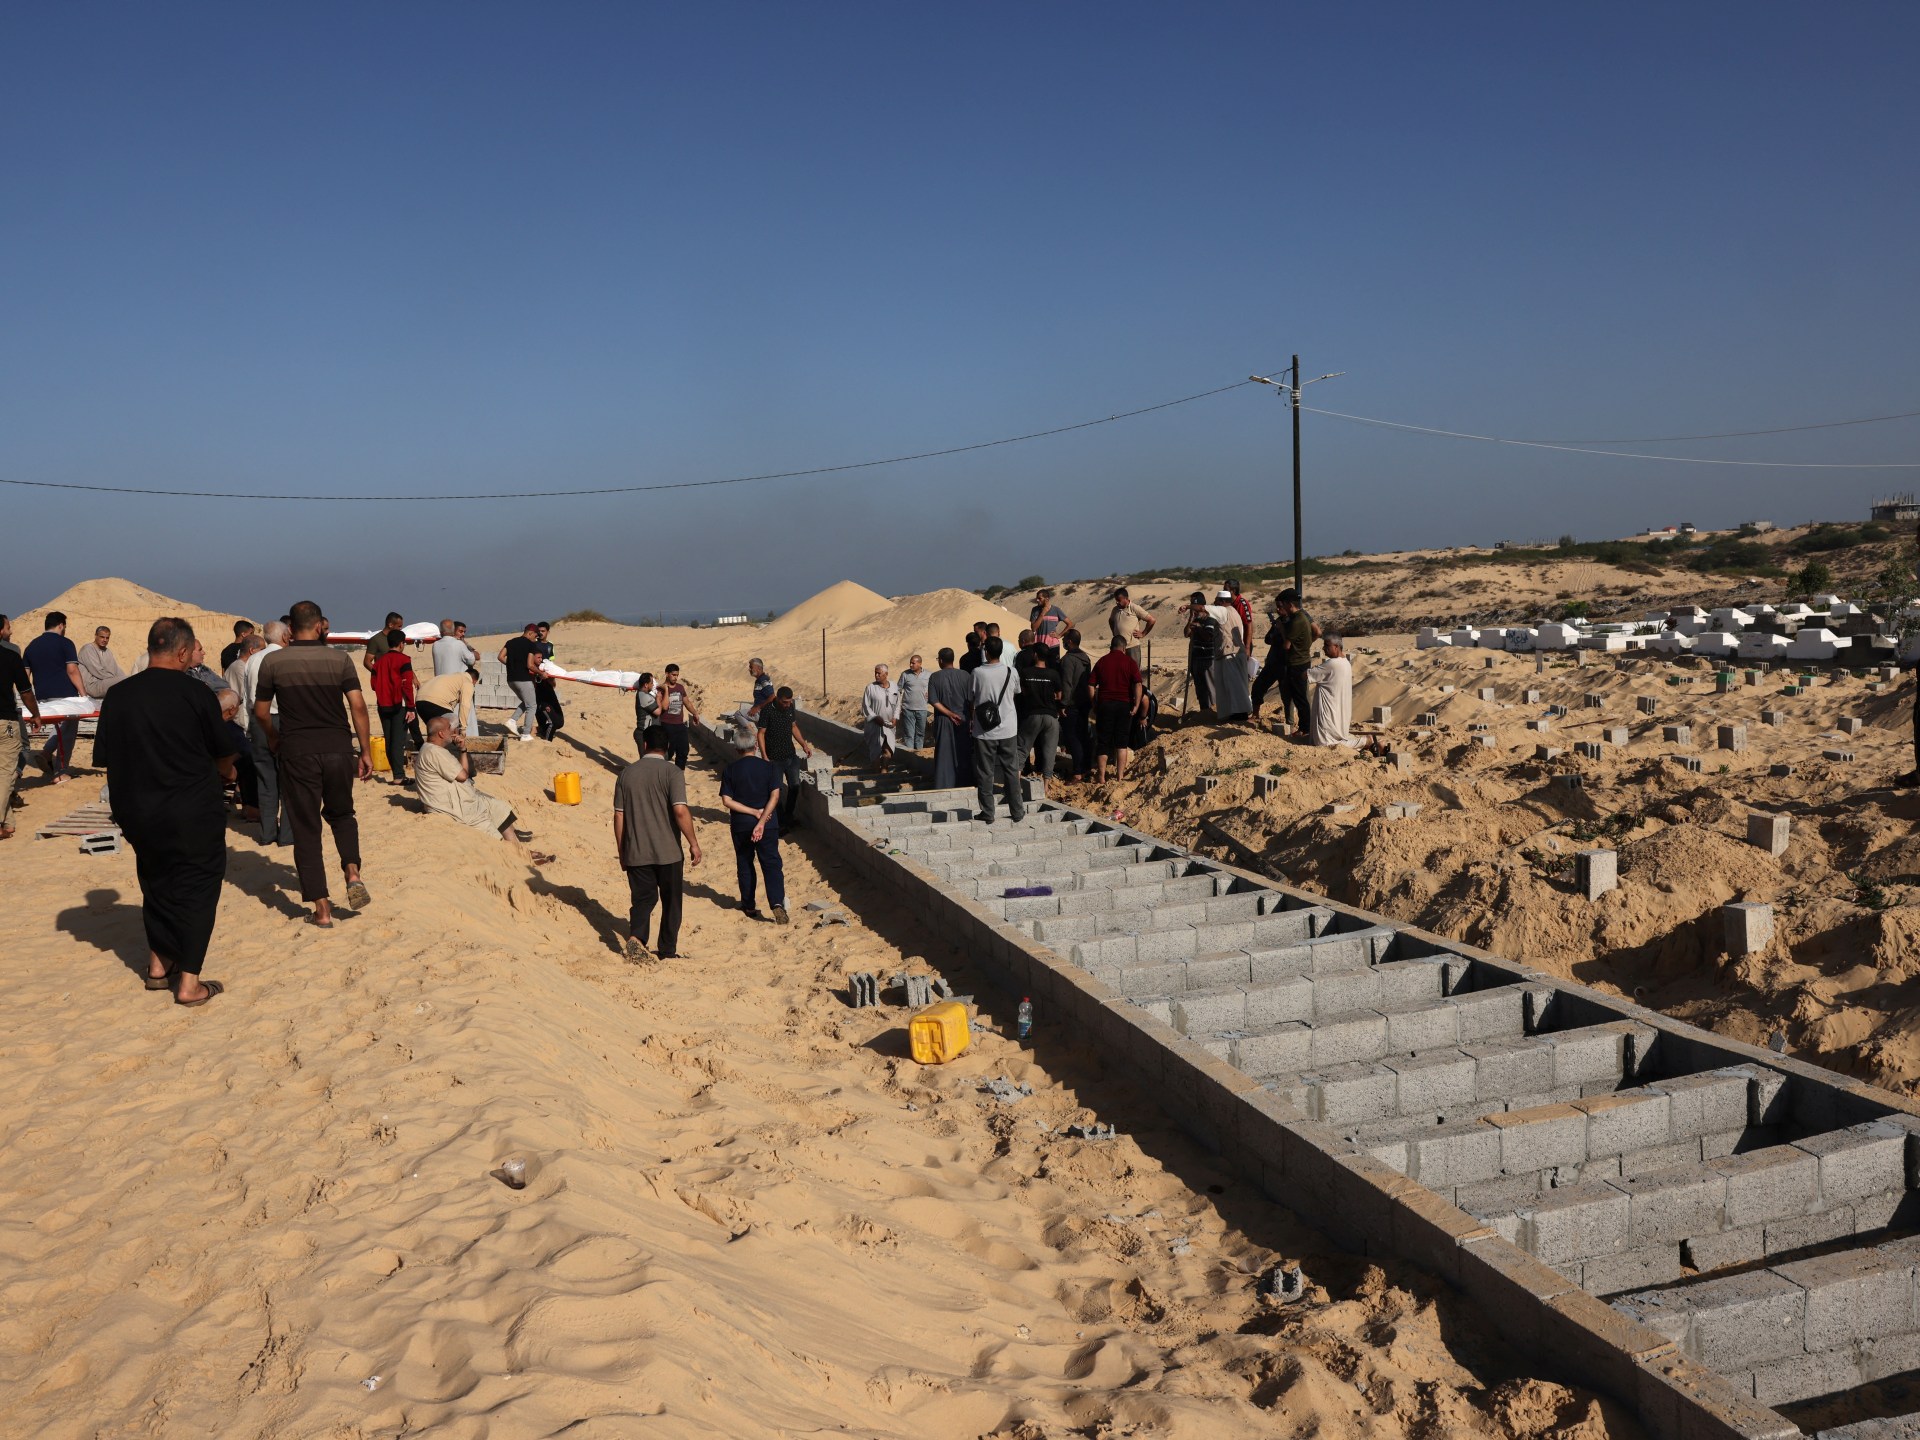 غزہ بچوں کا قبرستان بن گیا، اقوام متحدہ کے سربراہ انتونیو گوتریس کا جنگ بندی پر زور